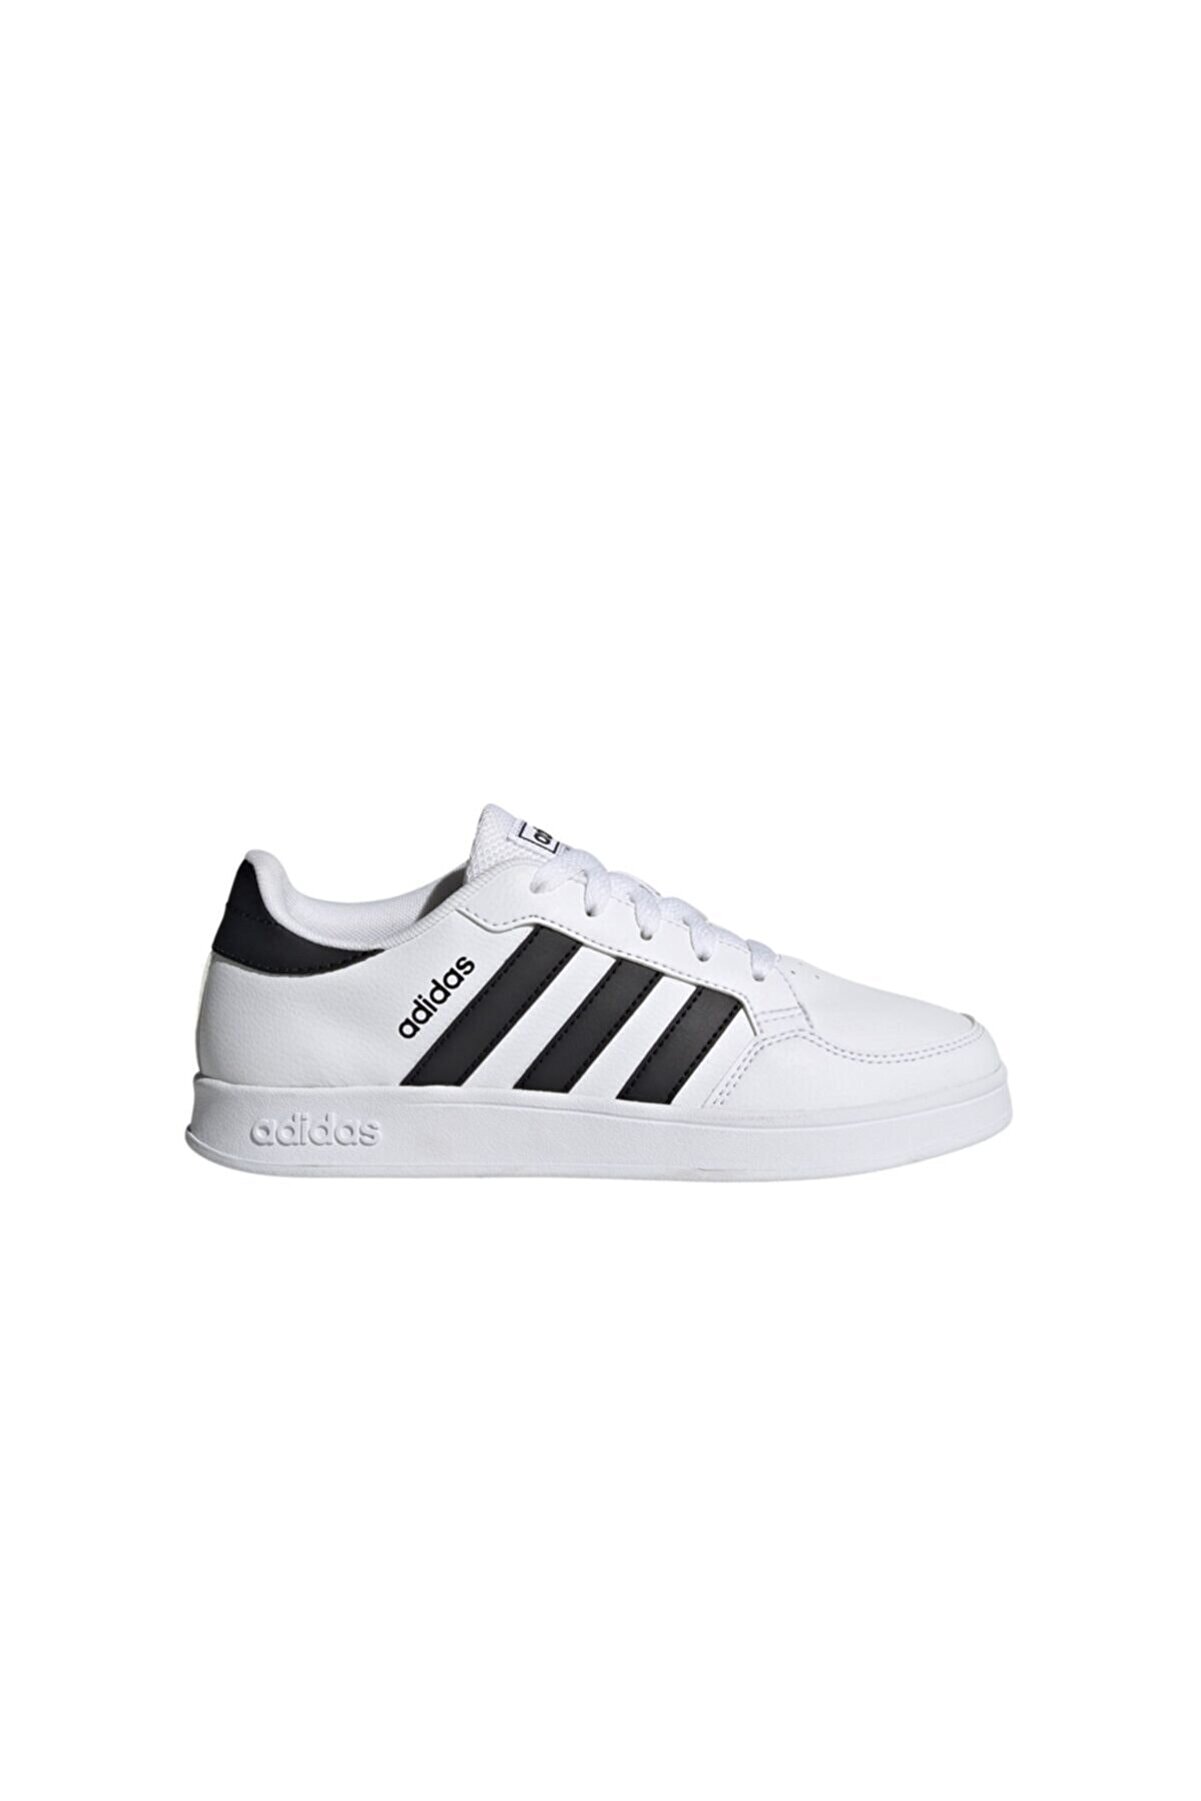 adidas Breaknet Genç Tenis Ayakkabısı Fy9506 Beyaz